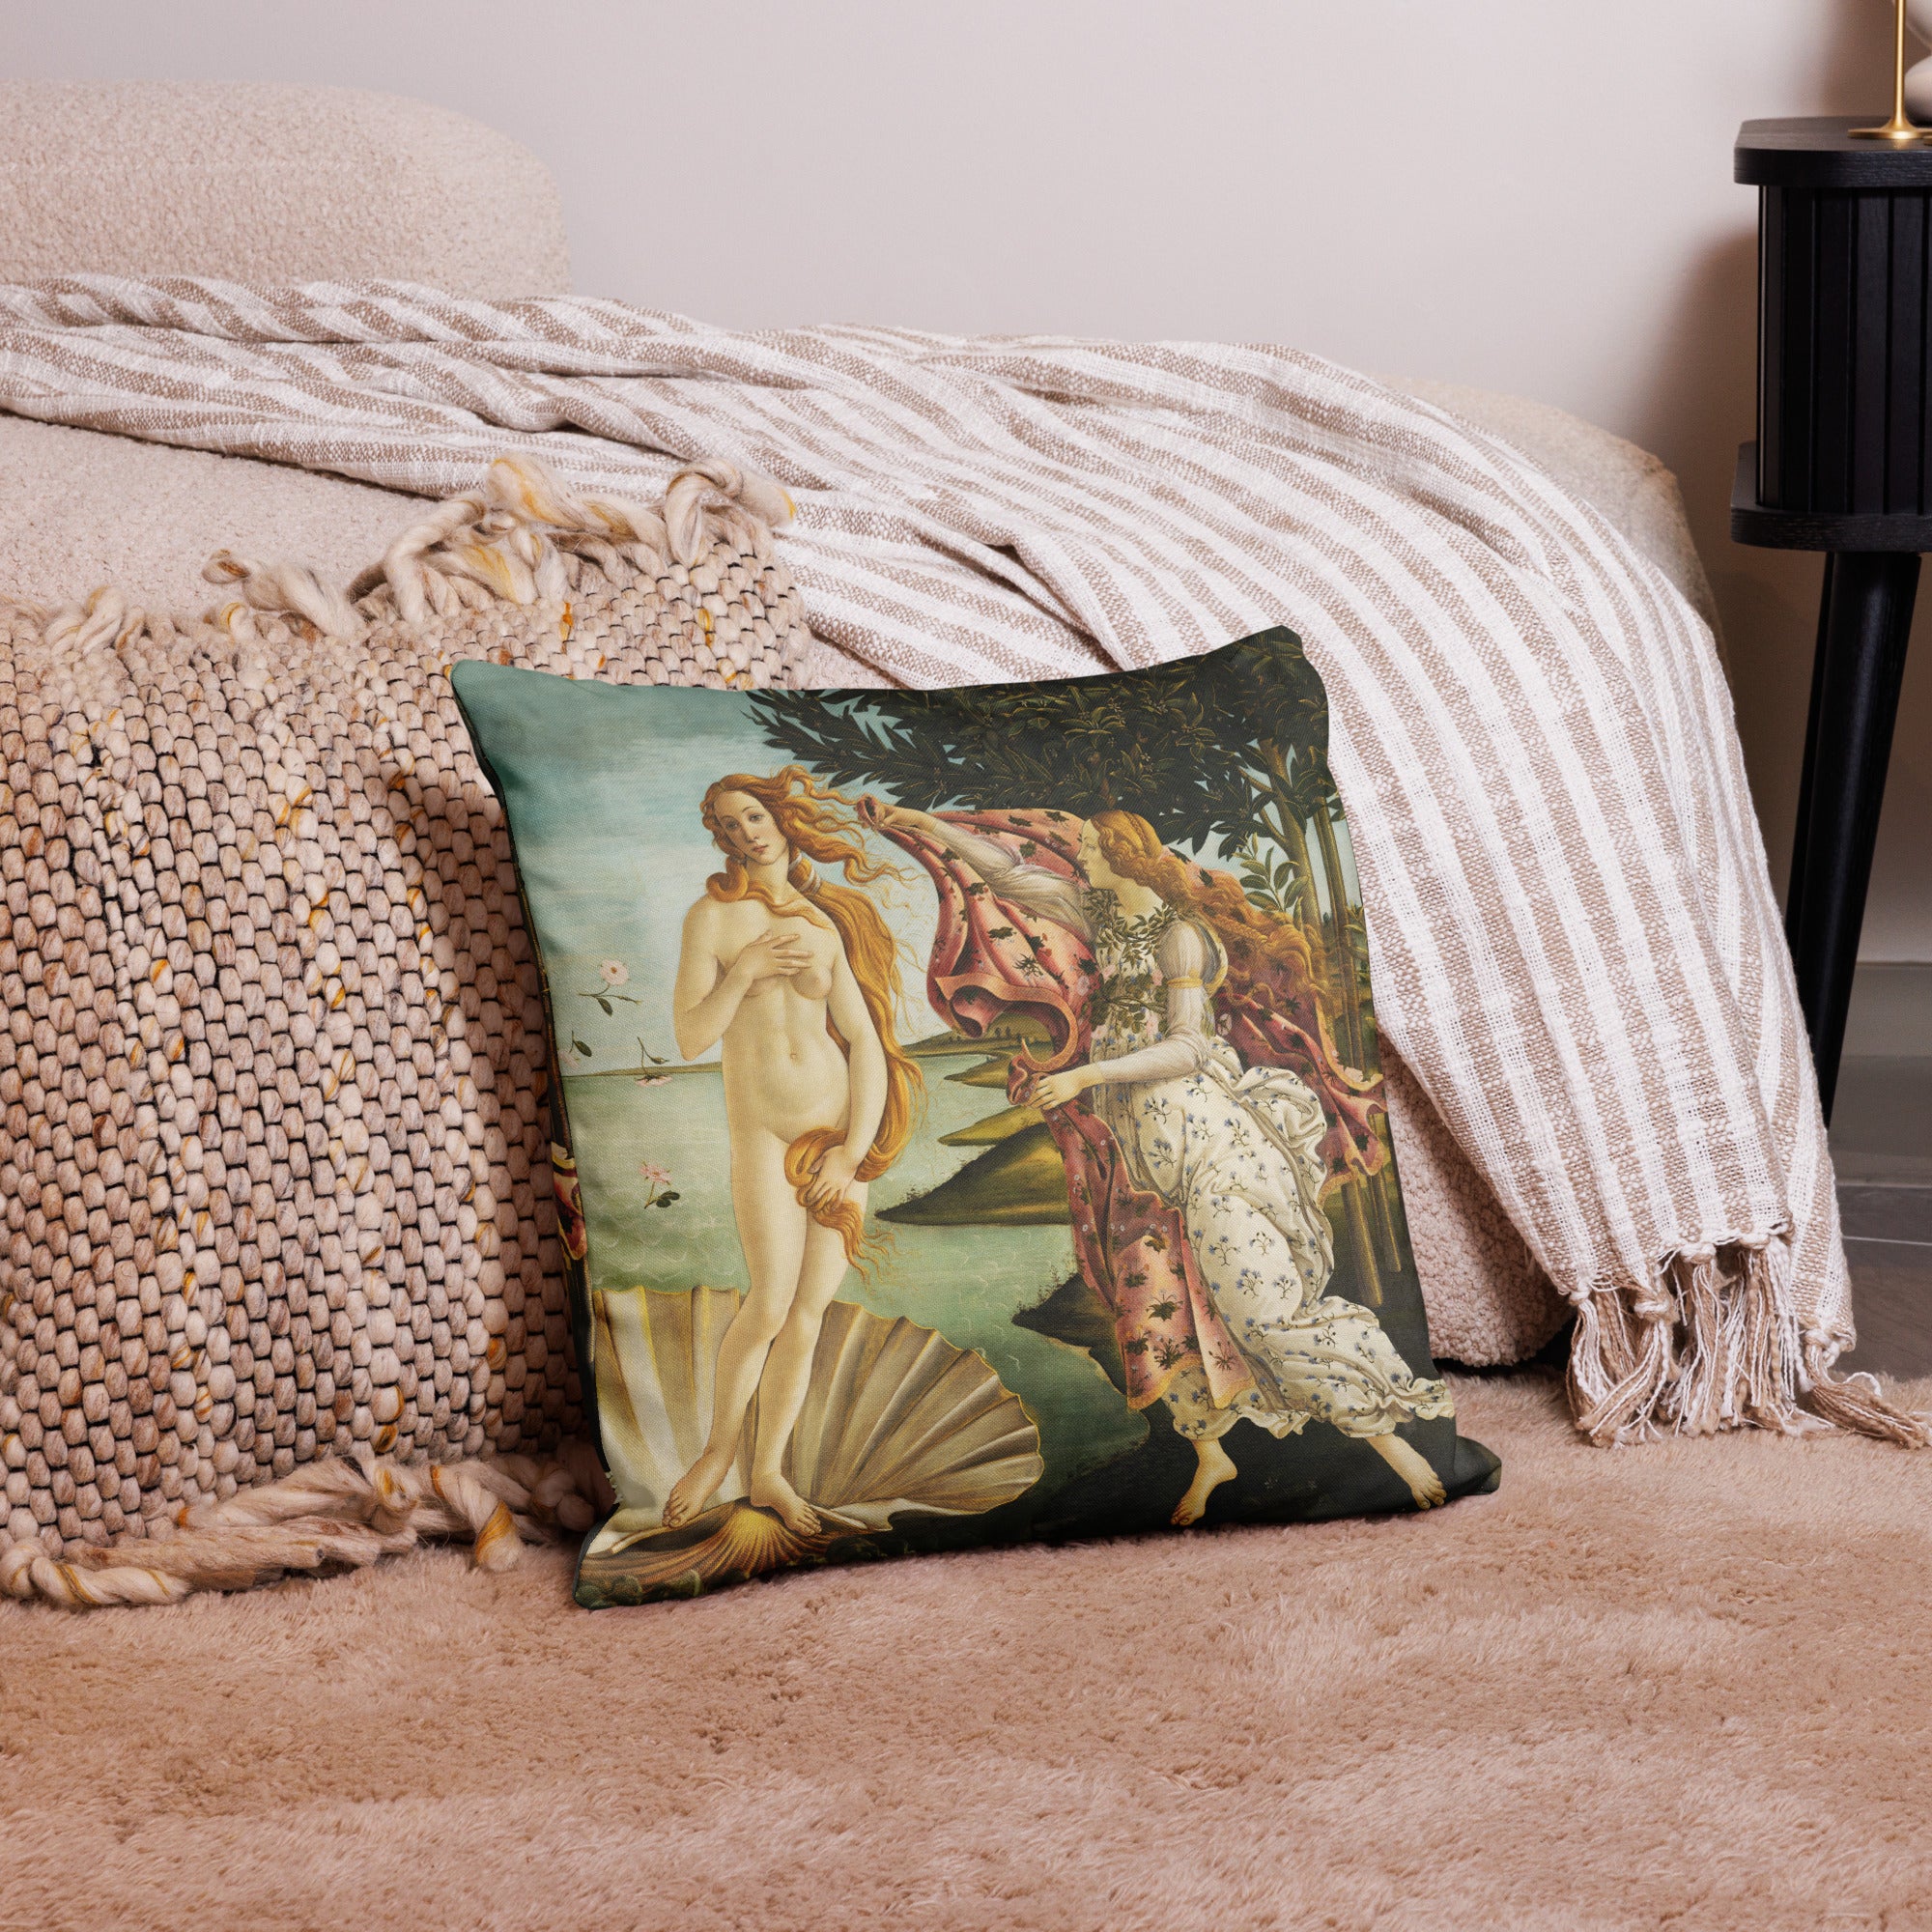 Sandro Botticelli 'The Birth of Venus' Famous Painting Premium Pillow | Premium Art Cushion